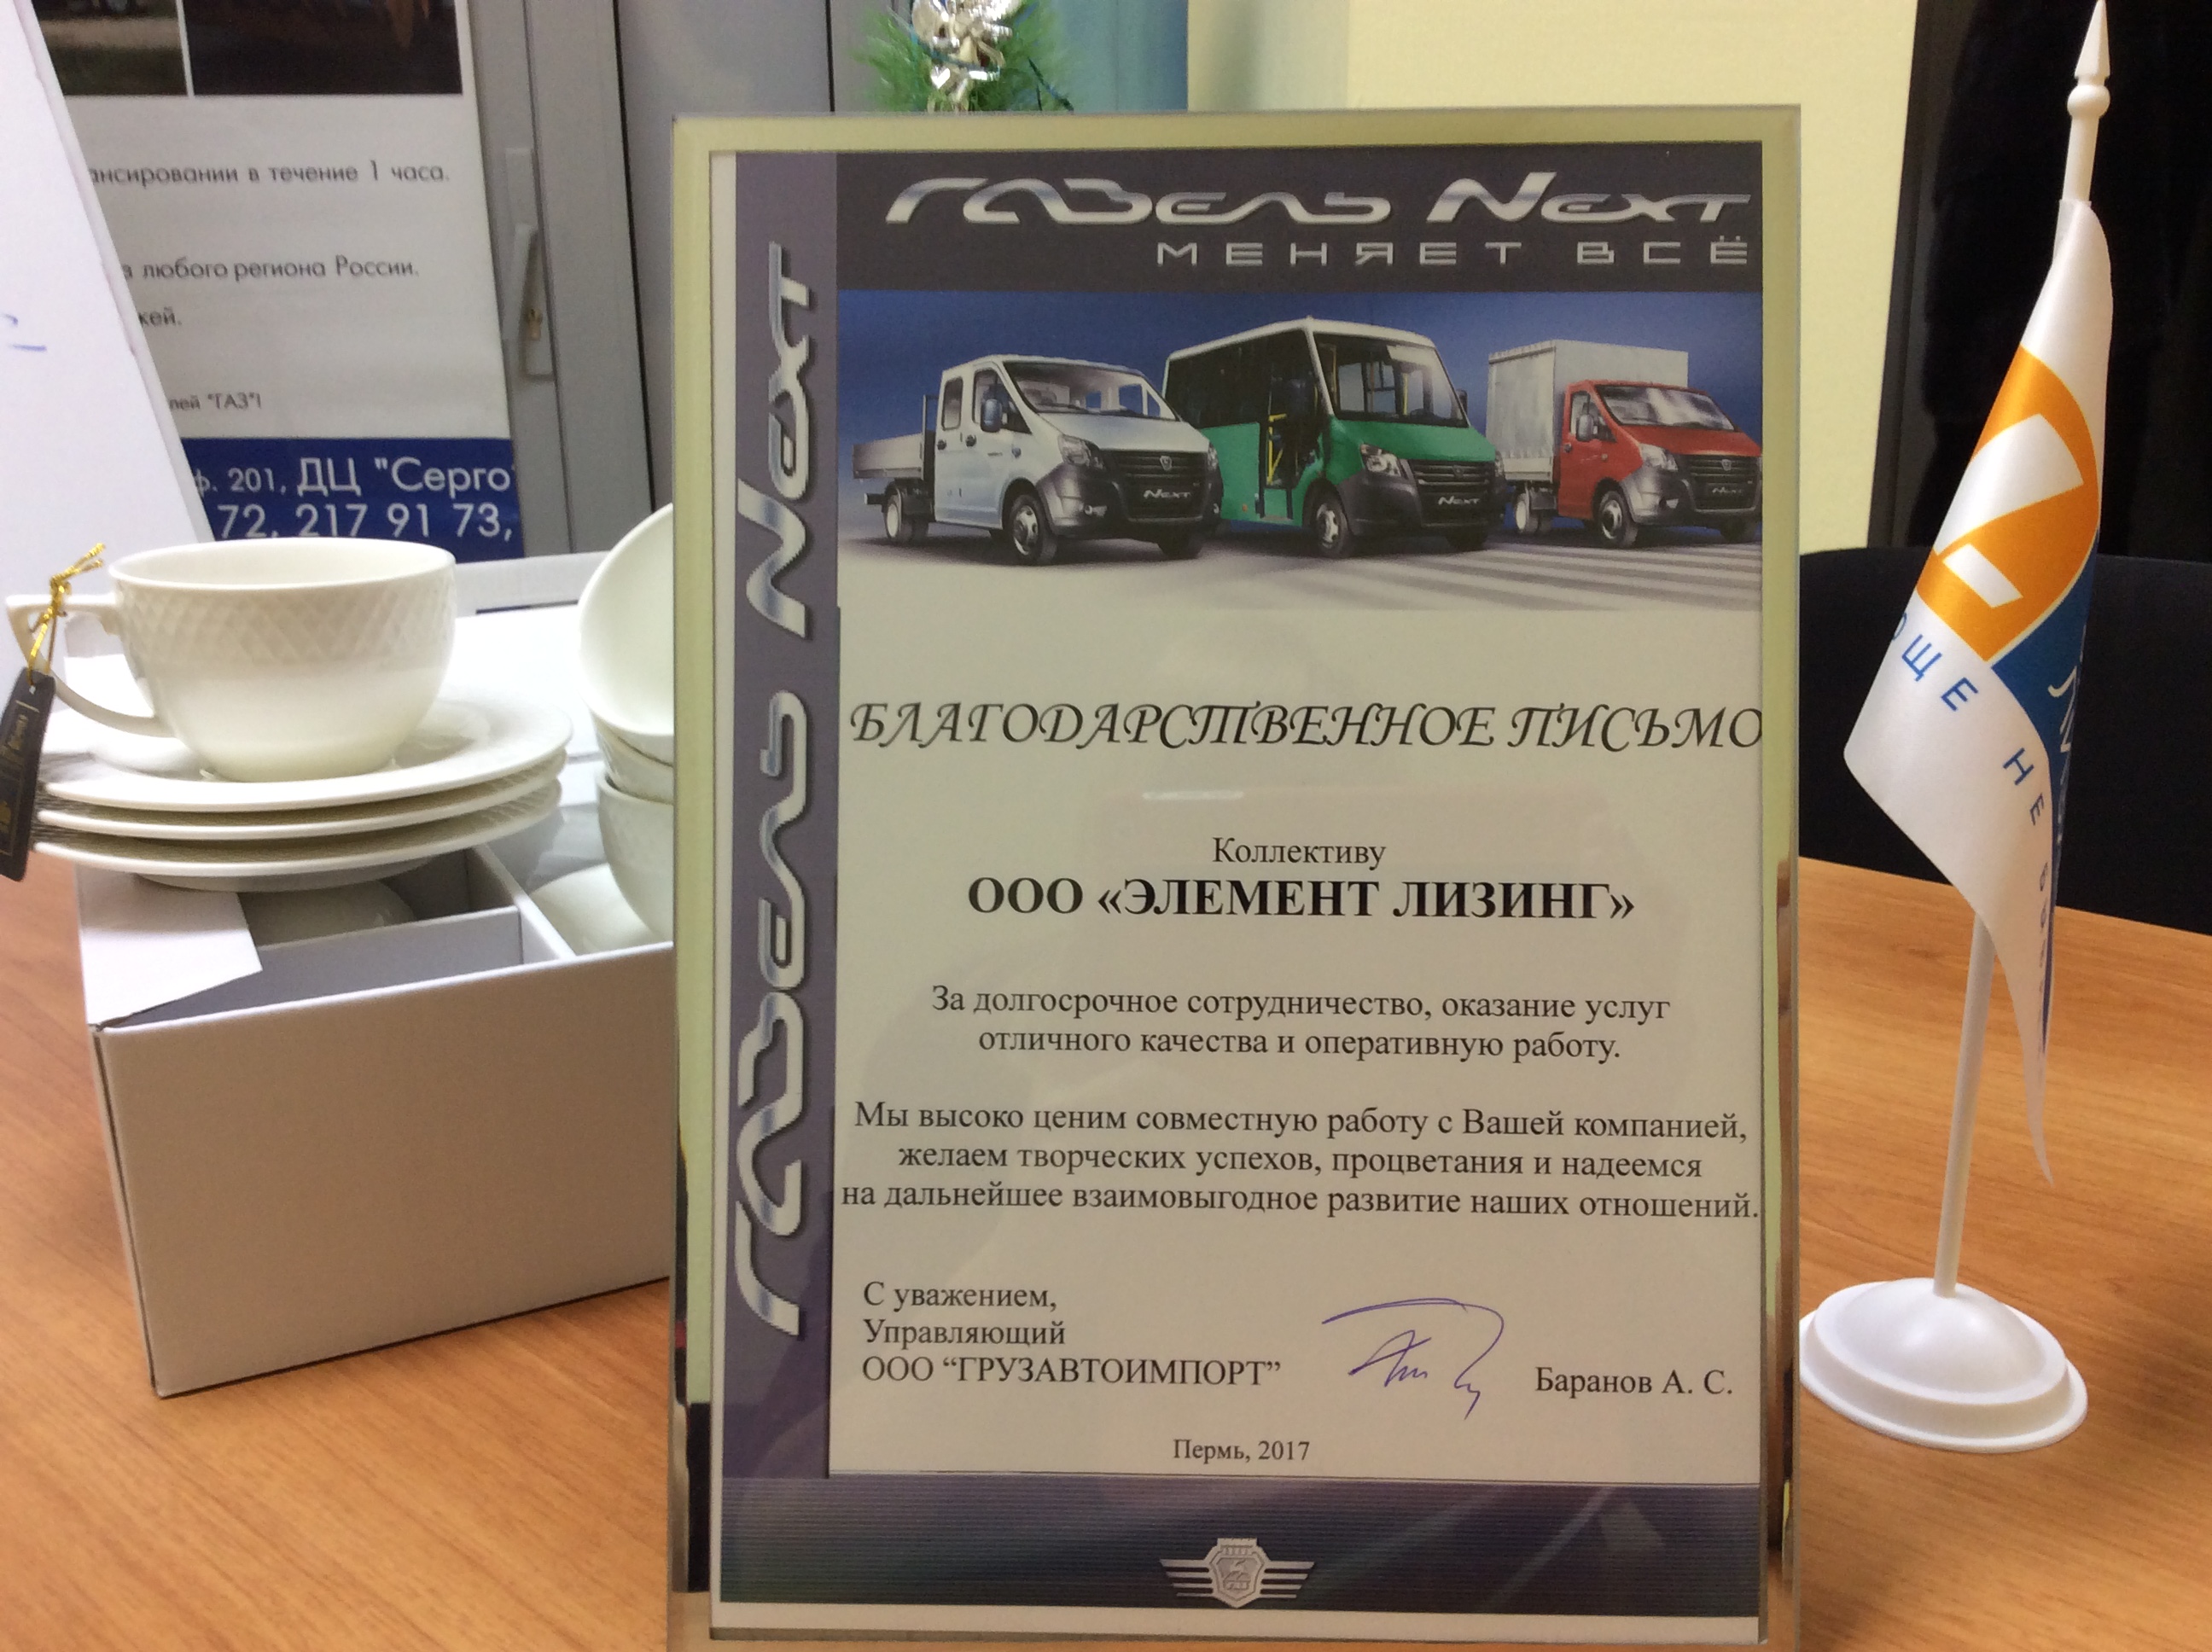  «Элемент. Пермь» получил благодарность от компании «Грузавтоимпорт» за плодотворное сотрудничество